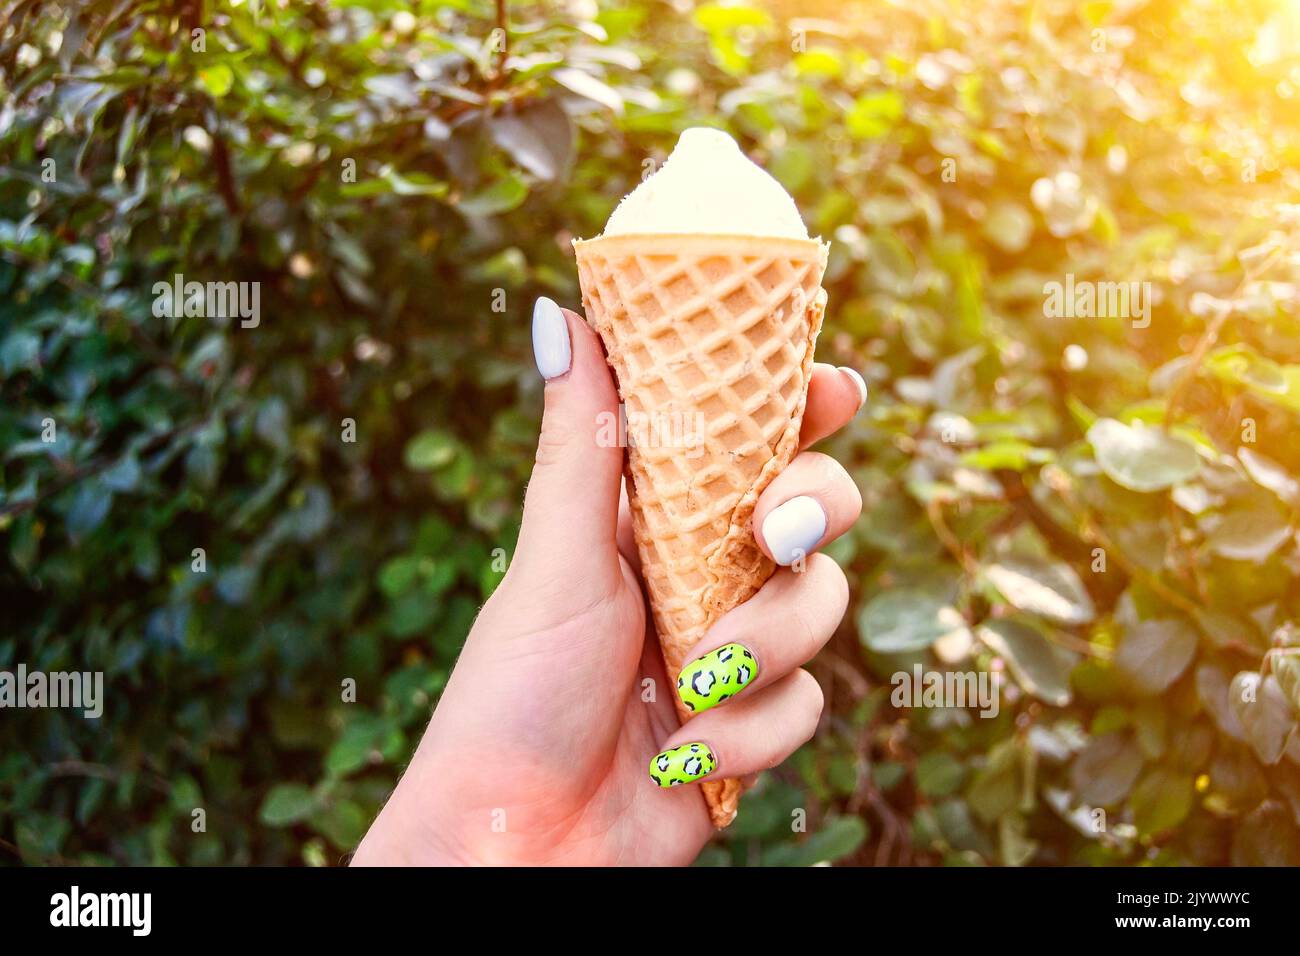 Glace à la vanille délicieuse en gaufre sur fond de feuilles vertes à la main de la jeune fille avec une manucure colorée. Ambiance d'été, lumière du soleil. Ongle tendance Banque D'Images